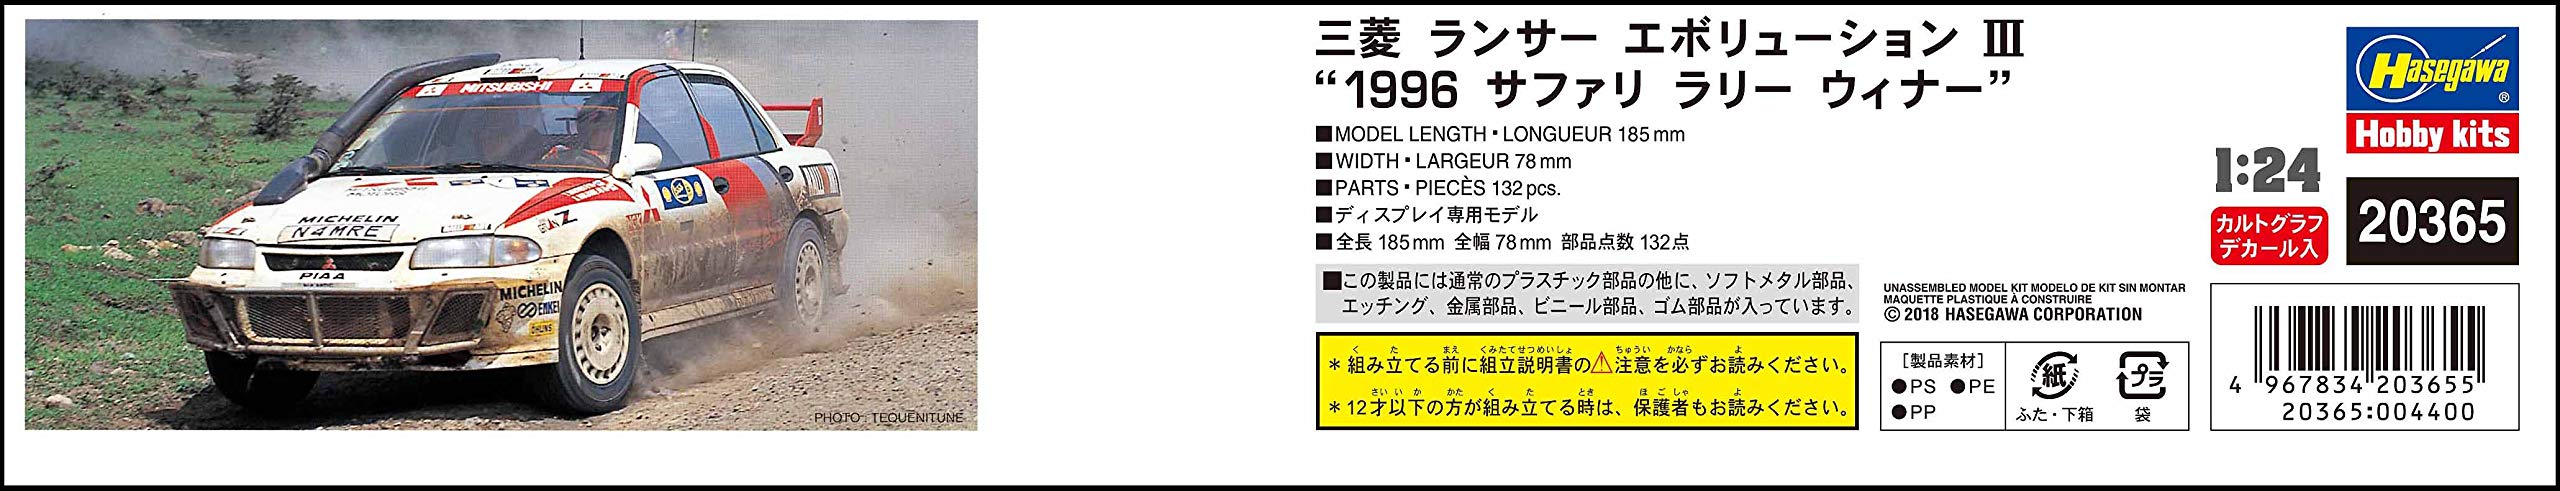 Hasegawa 20365 Mitsubishi Lancer Evolution III 1996 Safari Rally Winner 1/24 Plastic Cars